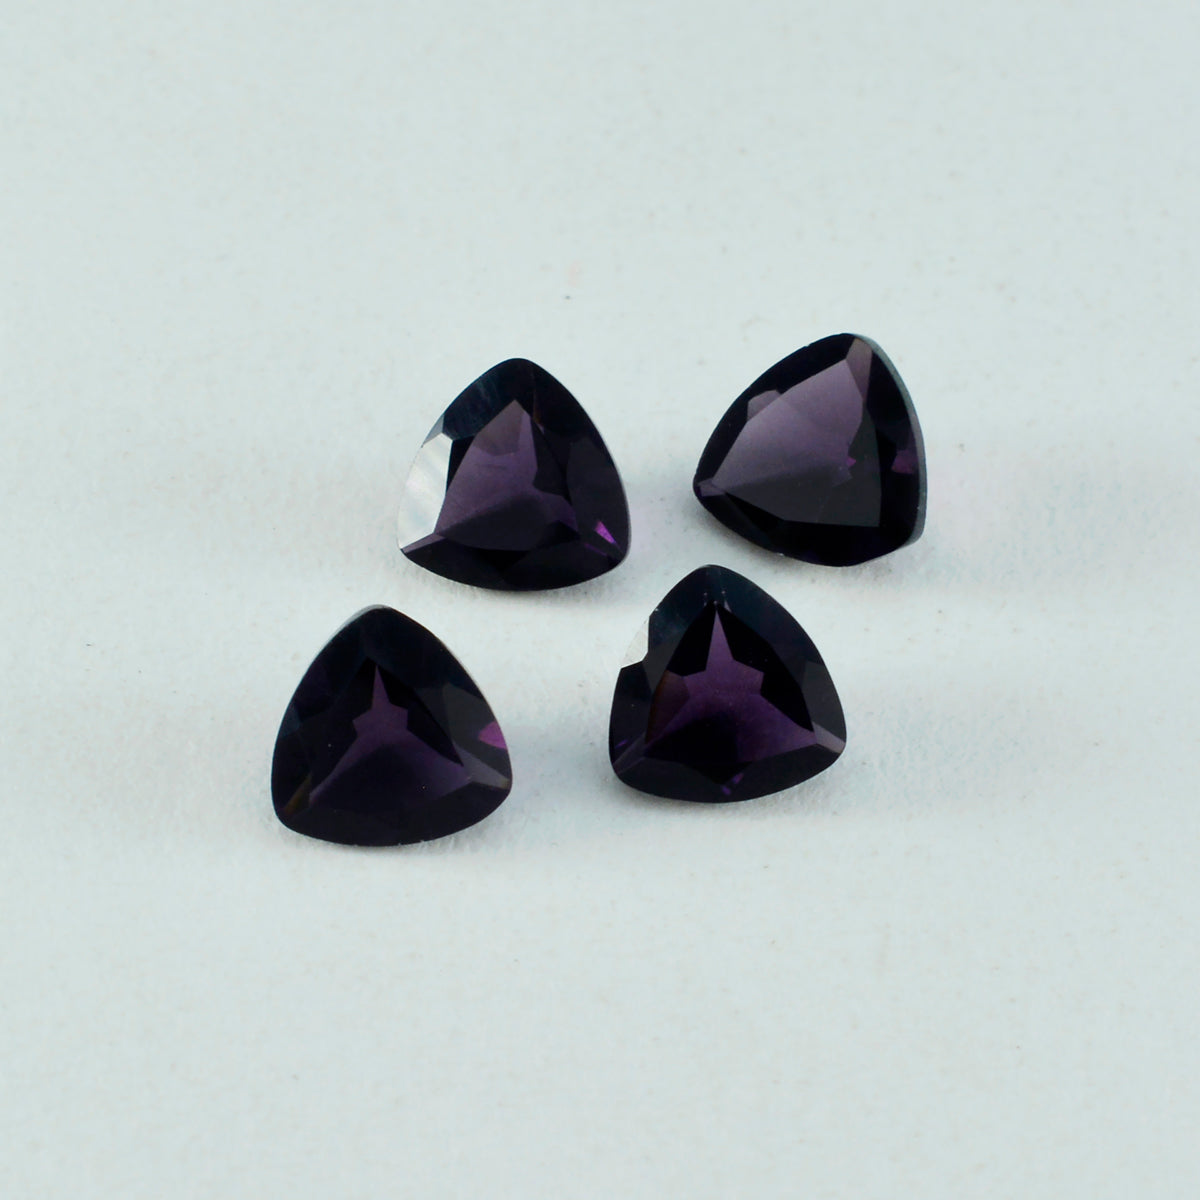 riyogems 1шт фиолетовый аметист cz ограненный 14x14 мм форма триллион отличное качество россыпь драгоценных камней